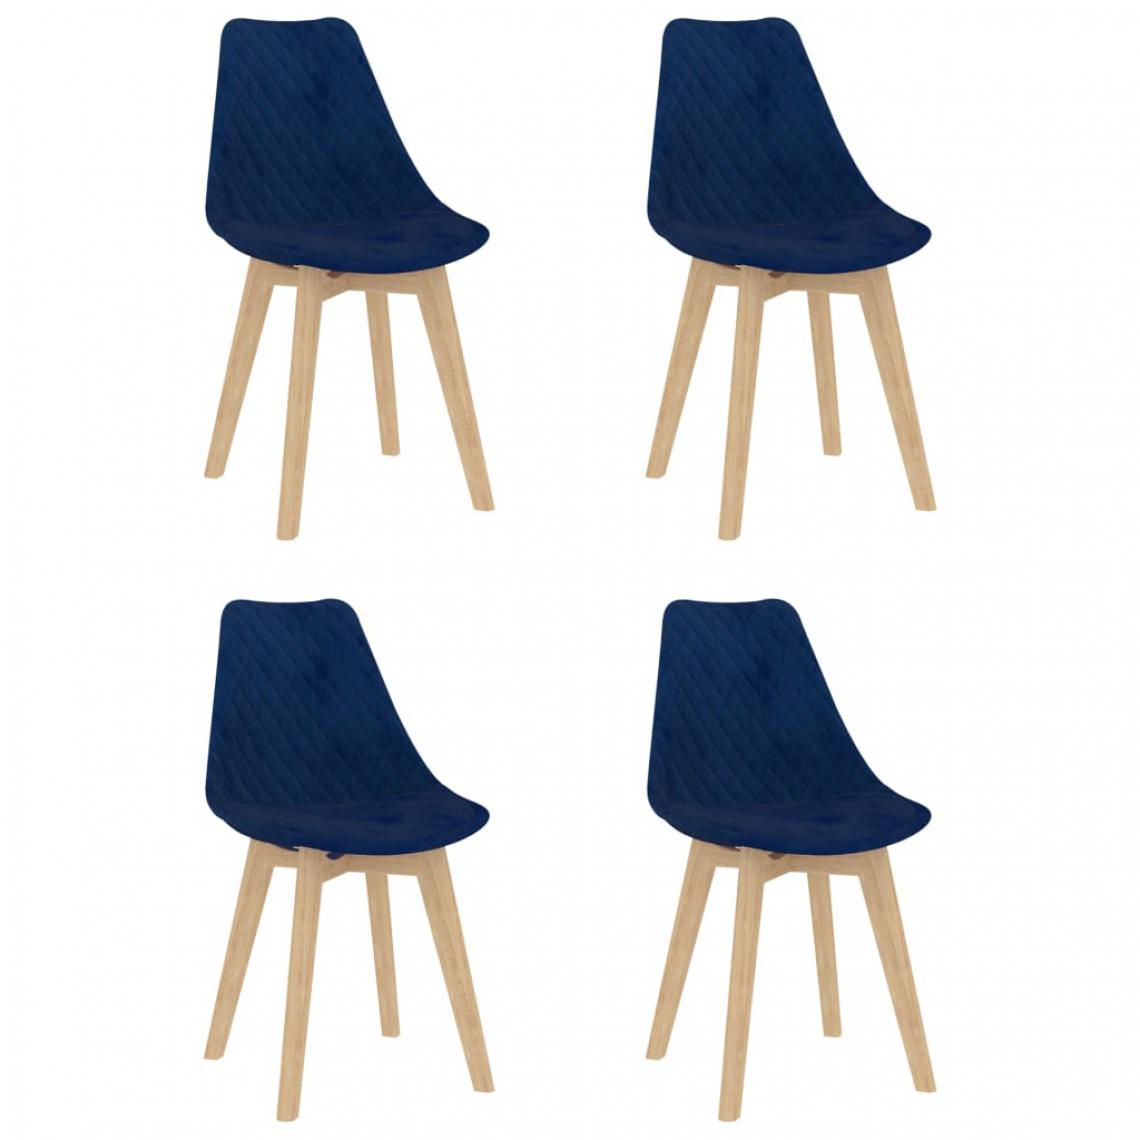 Icaverne - Stylé Fauteuils et chaises famille Sarajevo Chaises de salle à manger 4 pcs Bleu Velours - Chaises